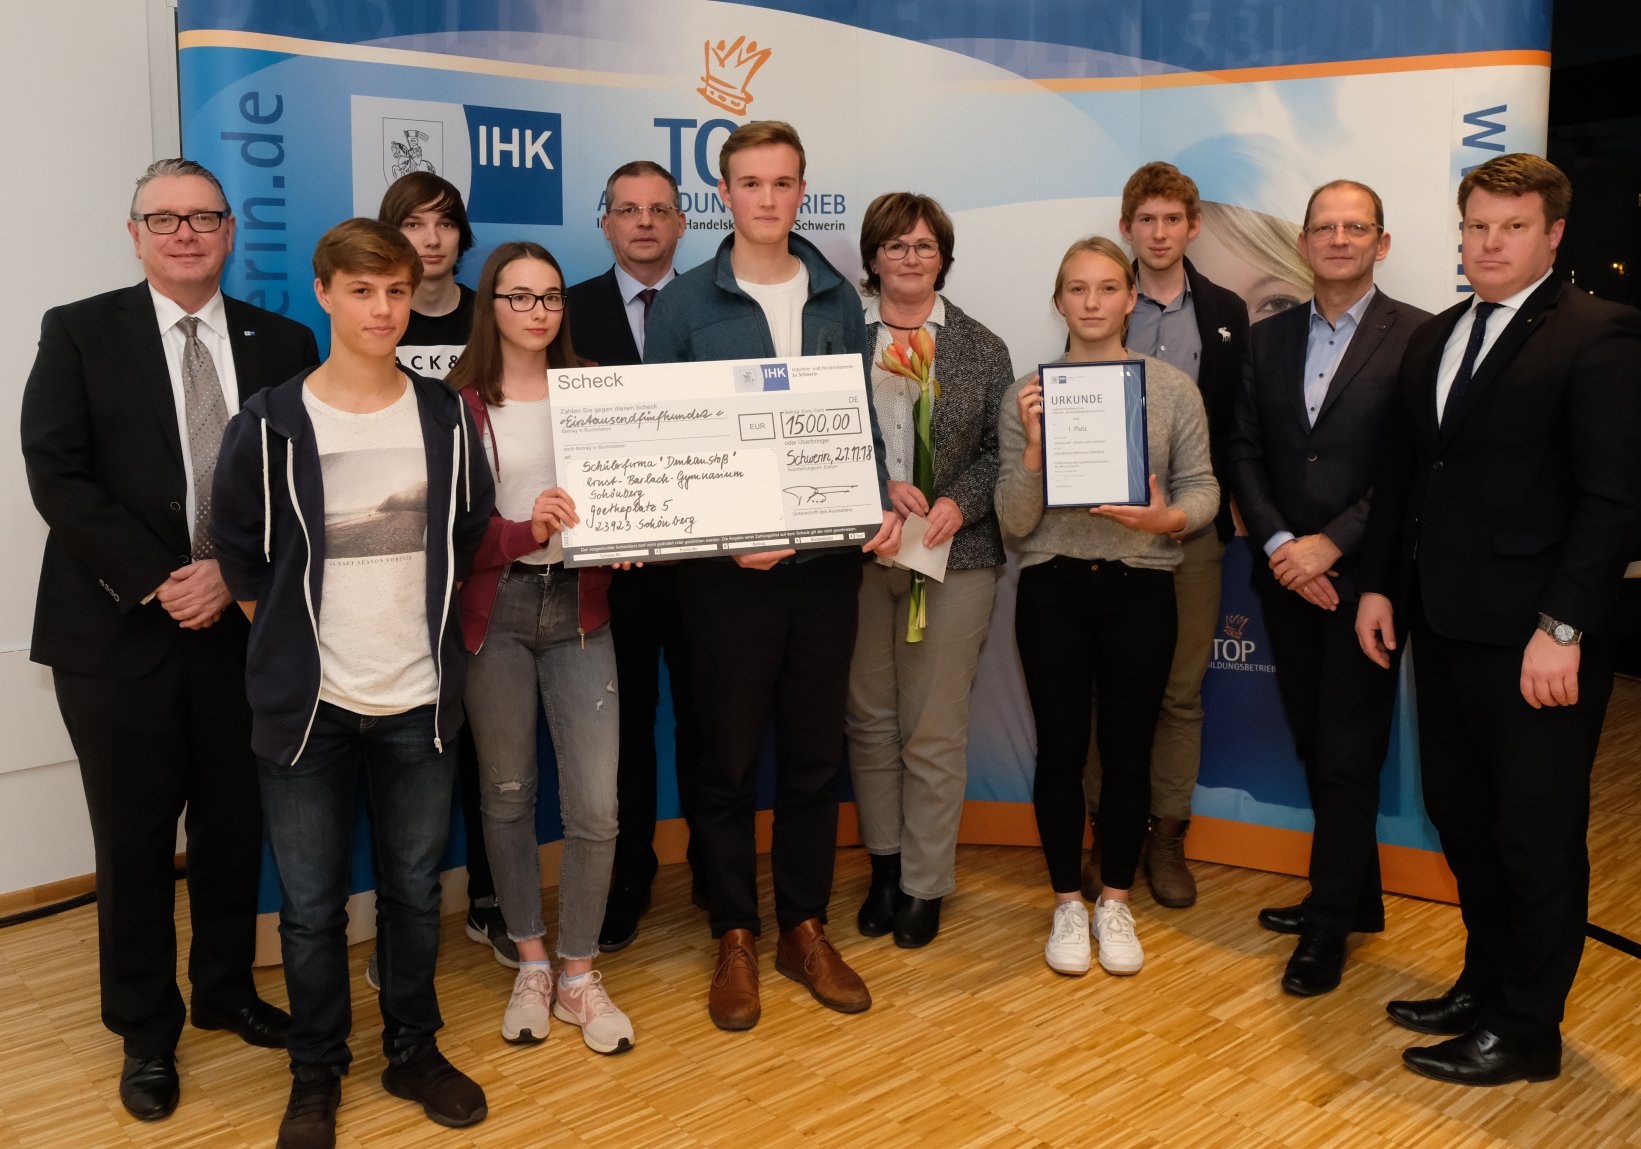 IHK-Jugendwirtschaftspreis 2018 wurde vergeben